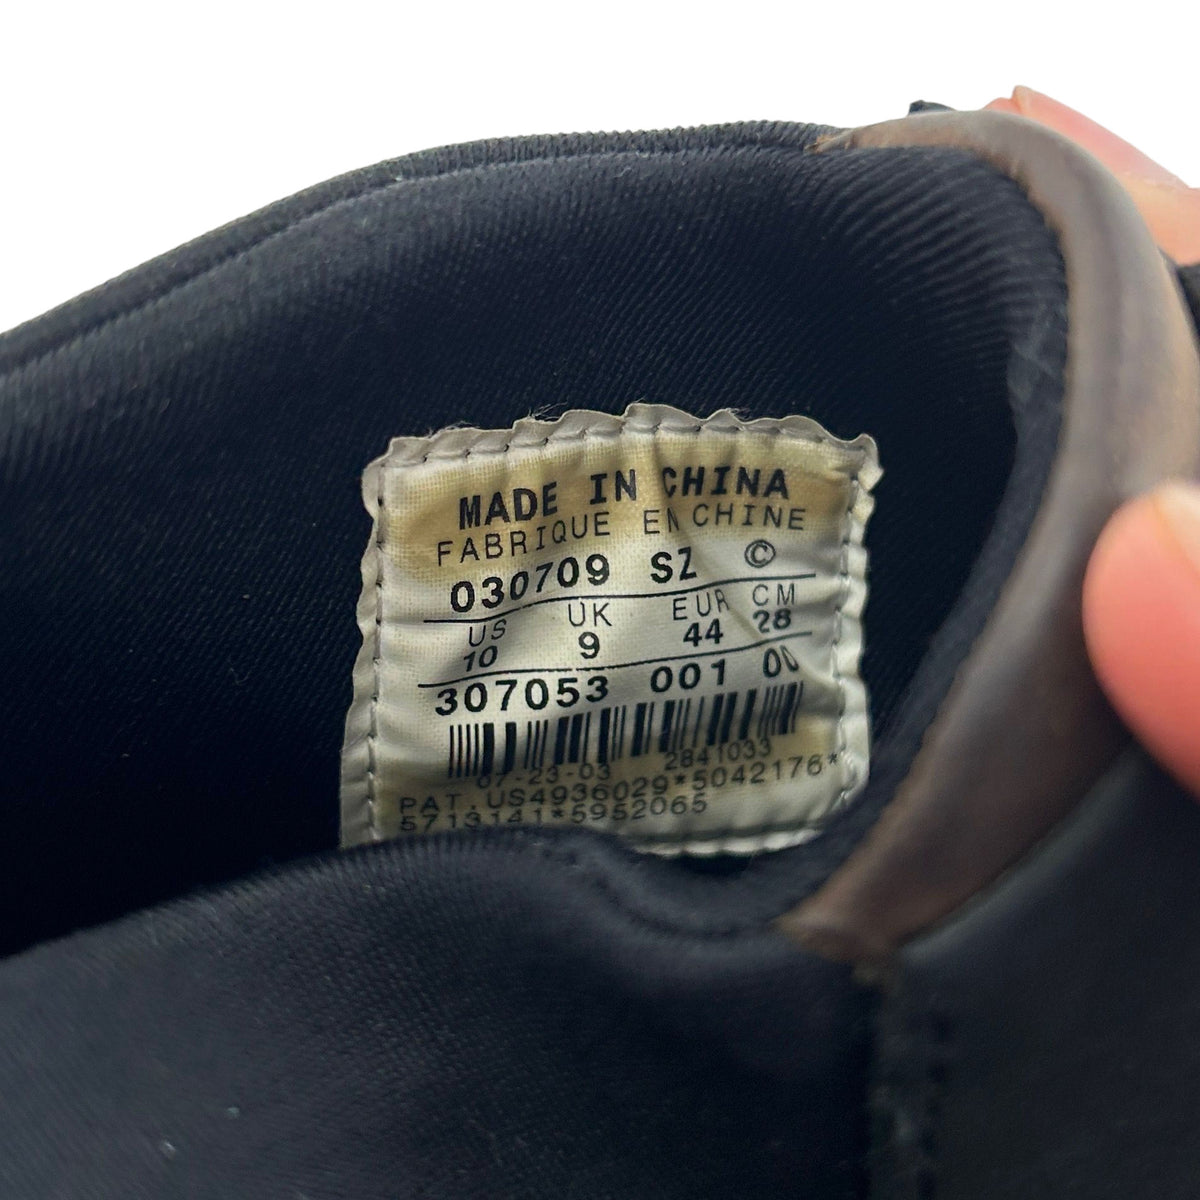 Vintage Nike ACG Slip On Shoes Size UK 9